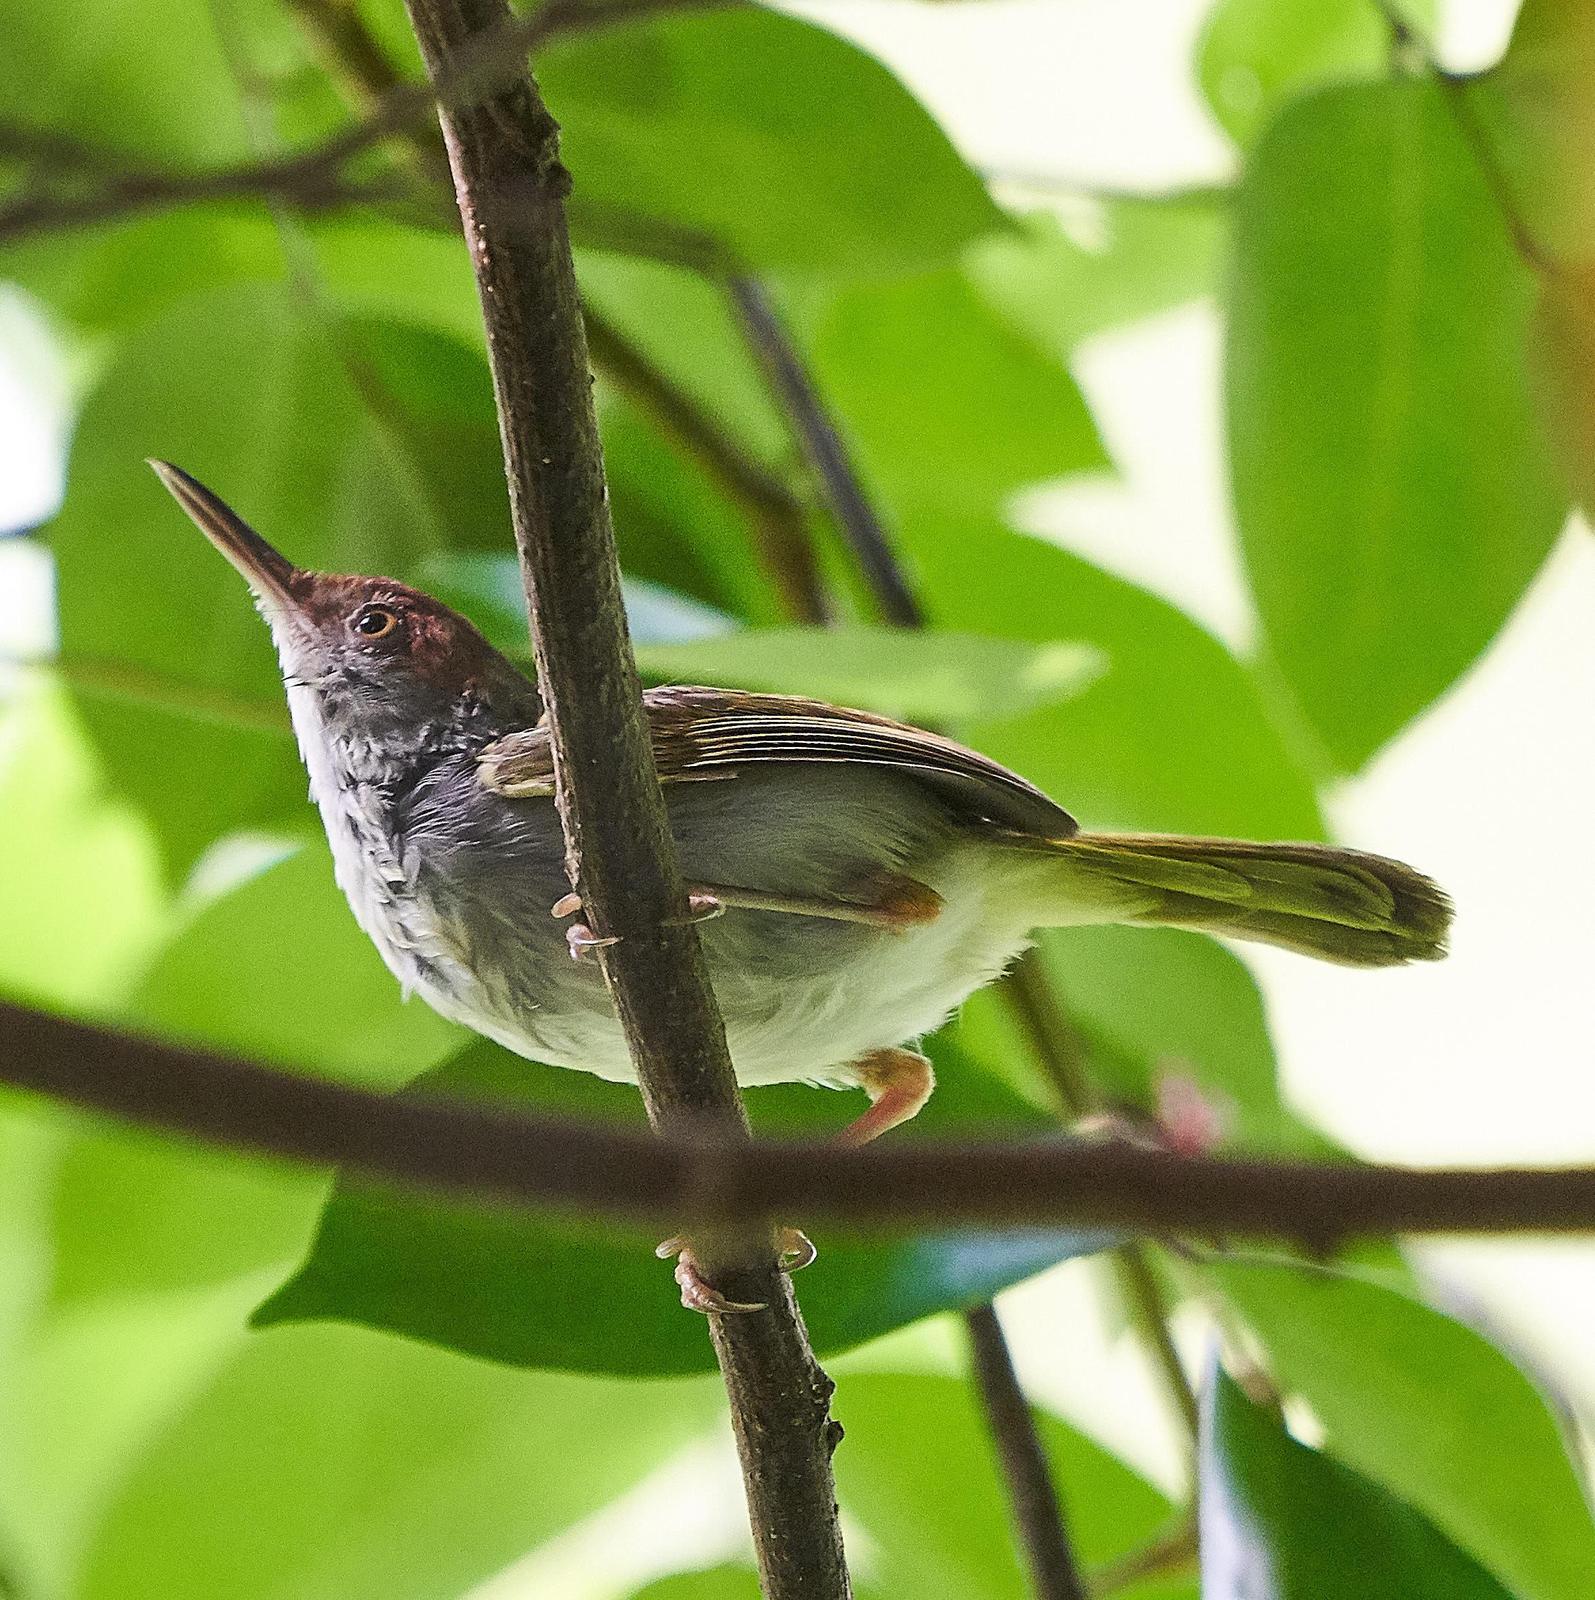 Dark-necked Tailorbird Photo by Steven Cheong